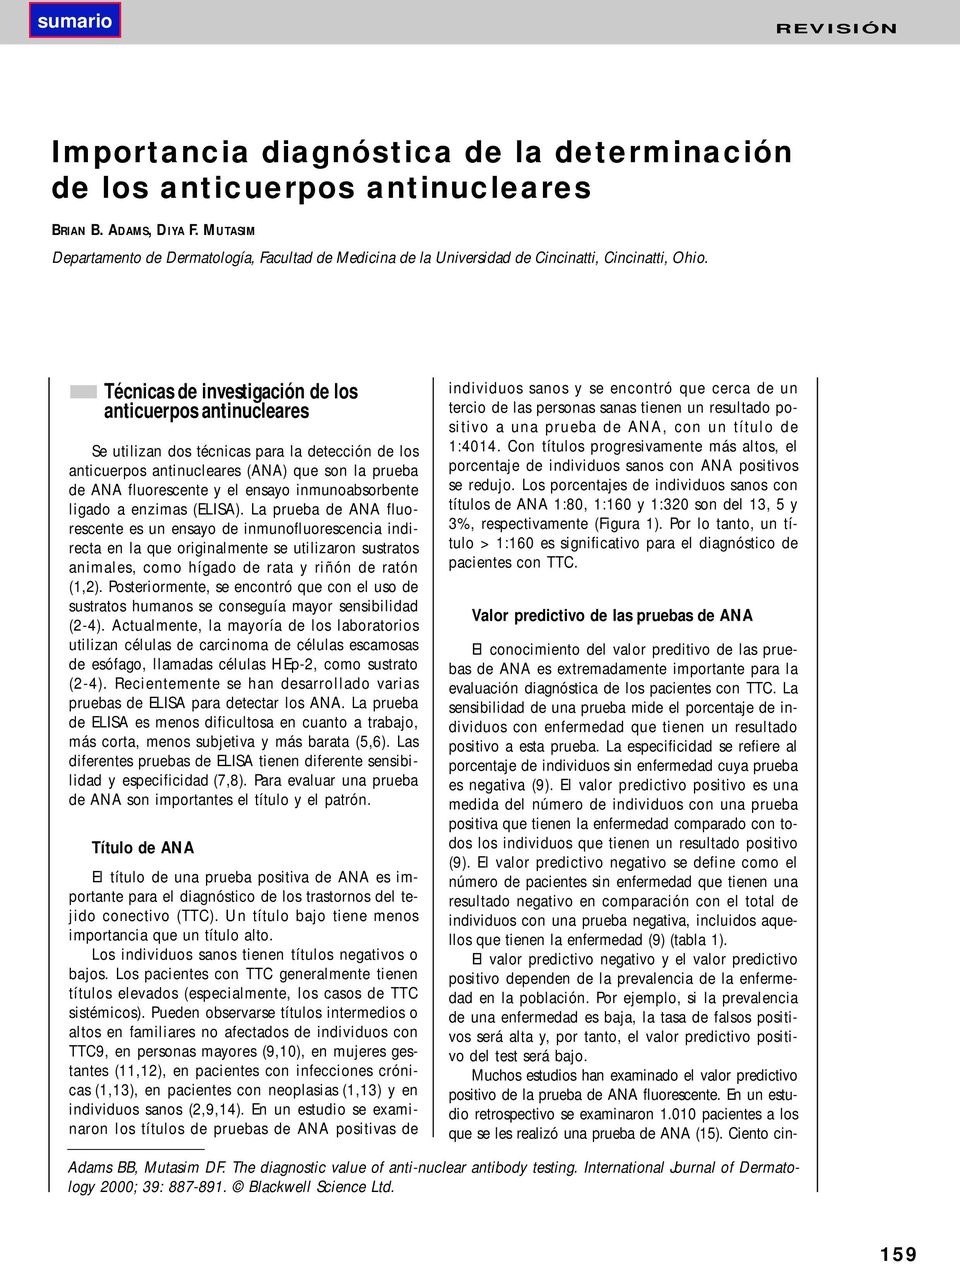 Técnicas de investigación de los anticuerpos antinucleares Se utilizan dos técnicas para la detección de los anticuerpos antinucleares (ANA) que son la prueba de ANA fluorescente y el ensayo